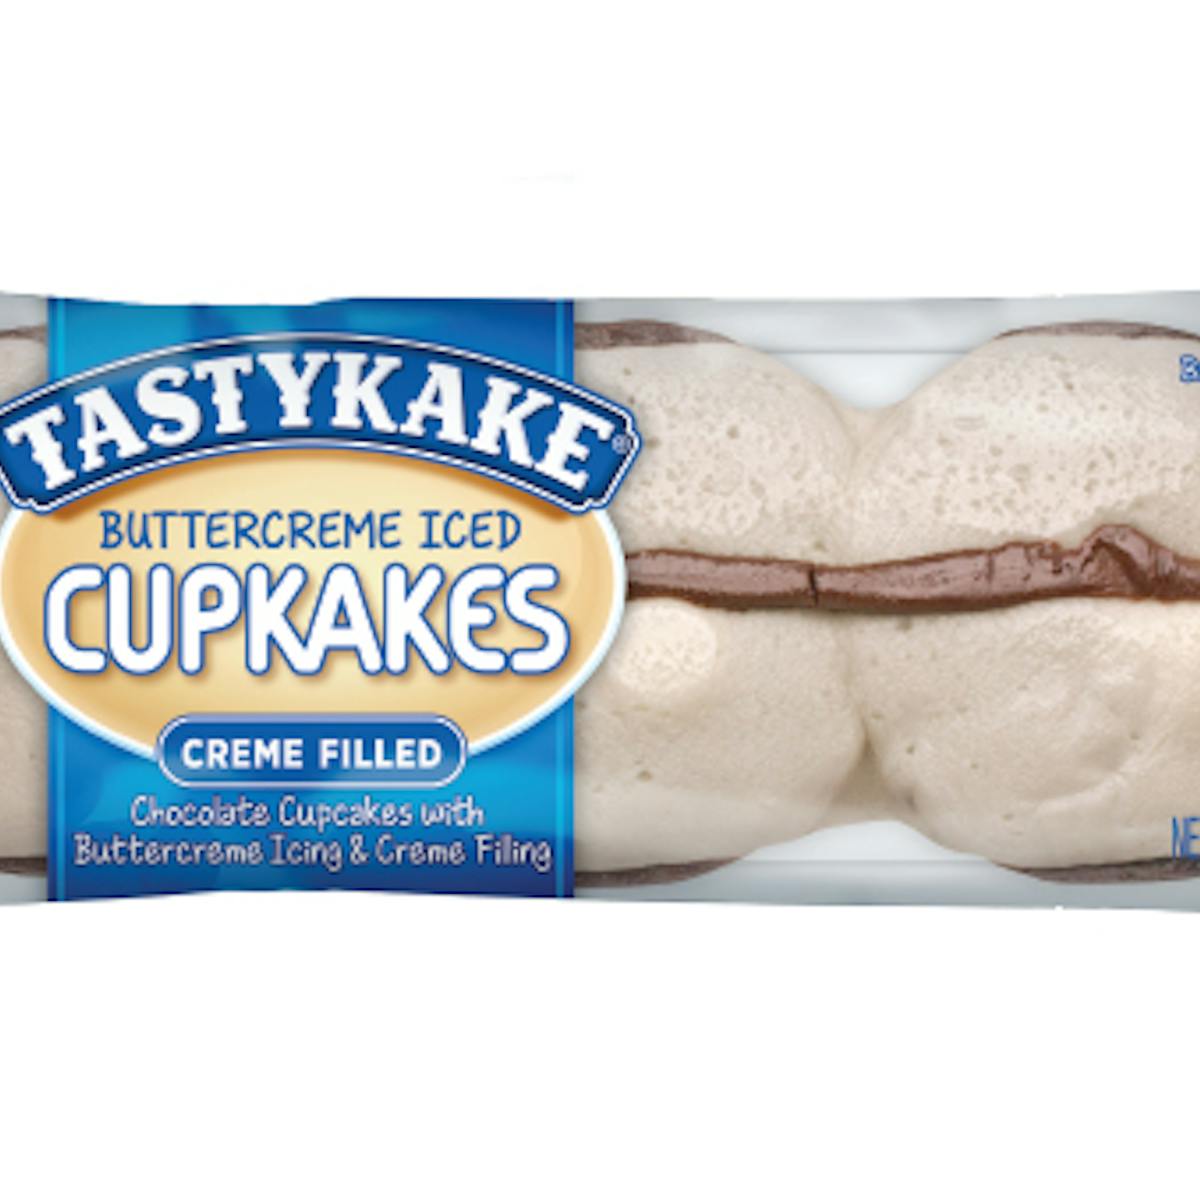 Tastykake Buttercreme Iced Cupcakes 3 5oz